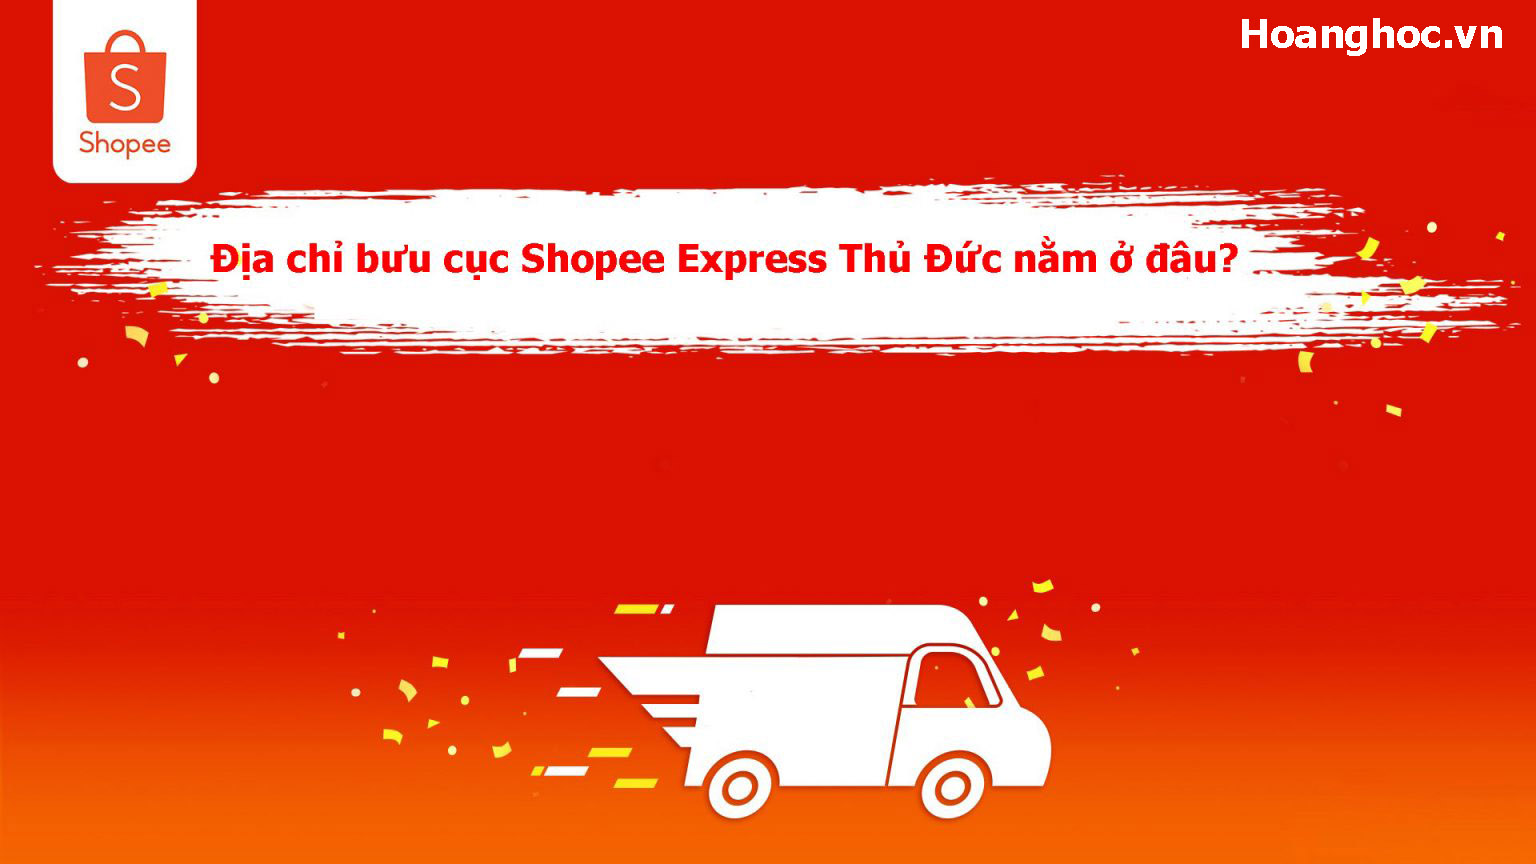 Địa chỉ bưu cục Shopee Express Thủ Đức nằm ở đâu?